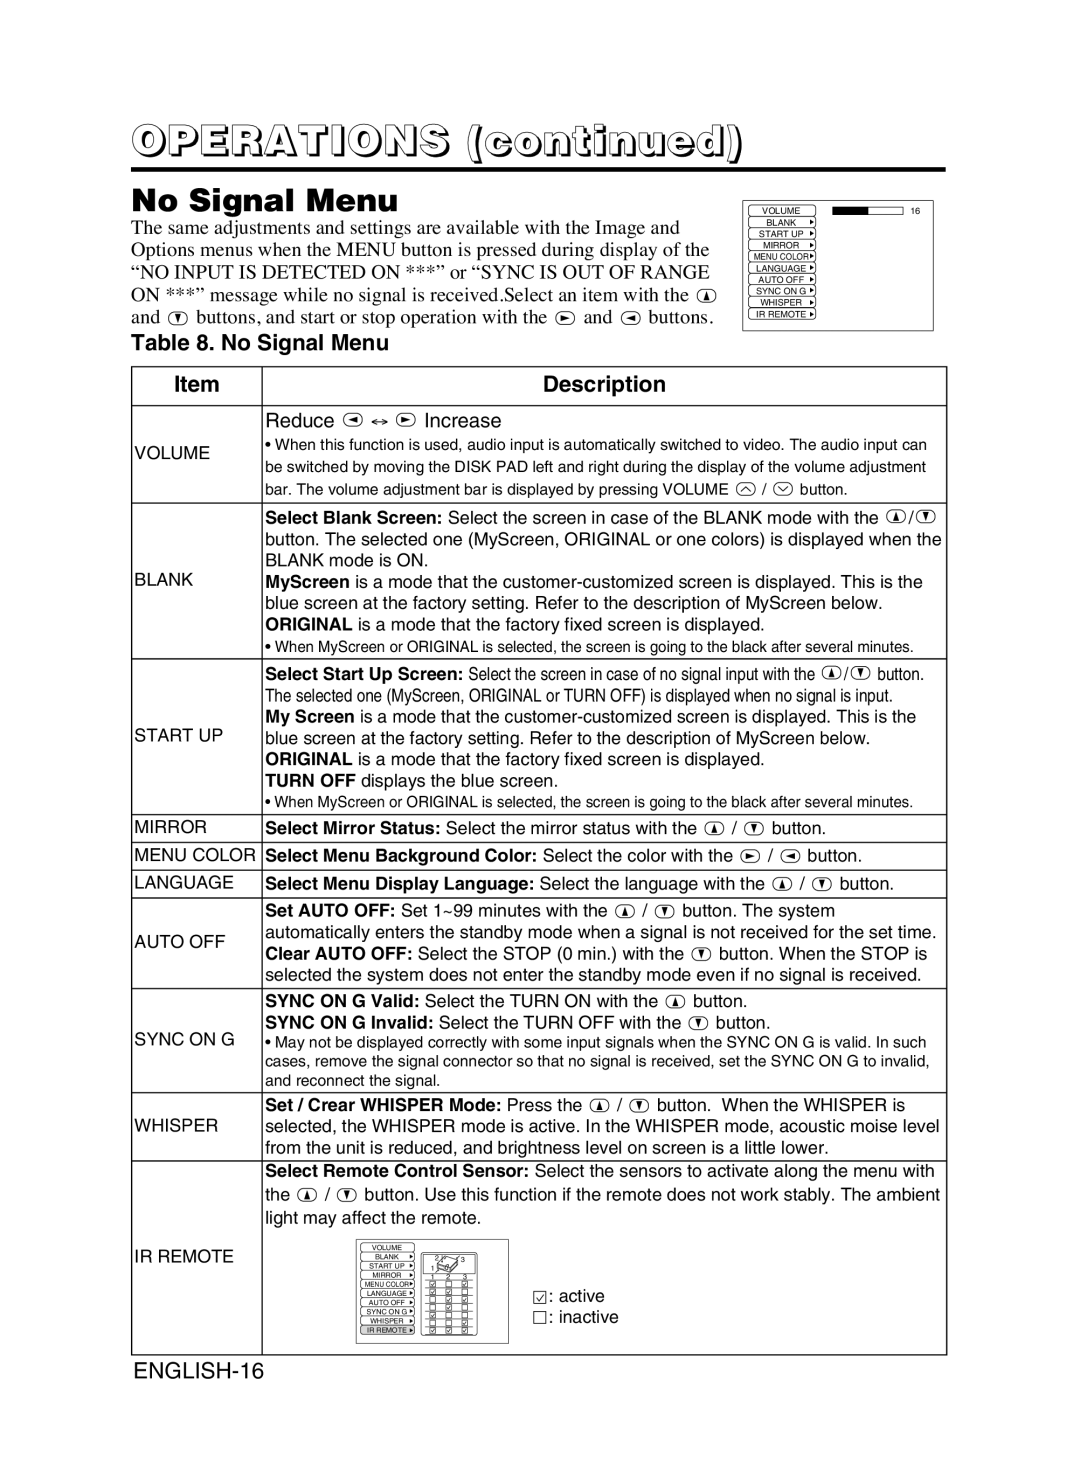 Dukane 8053 user manual No Signal Menu, OPERATIONS continued, Description, ENGLISH-16 